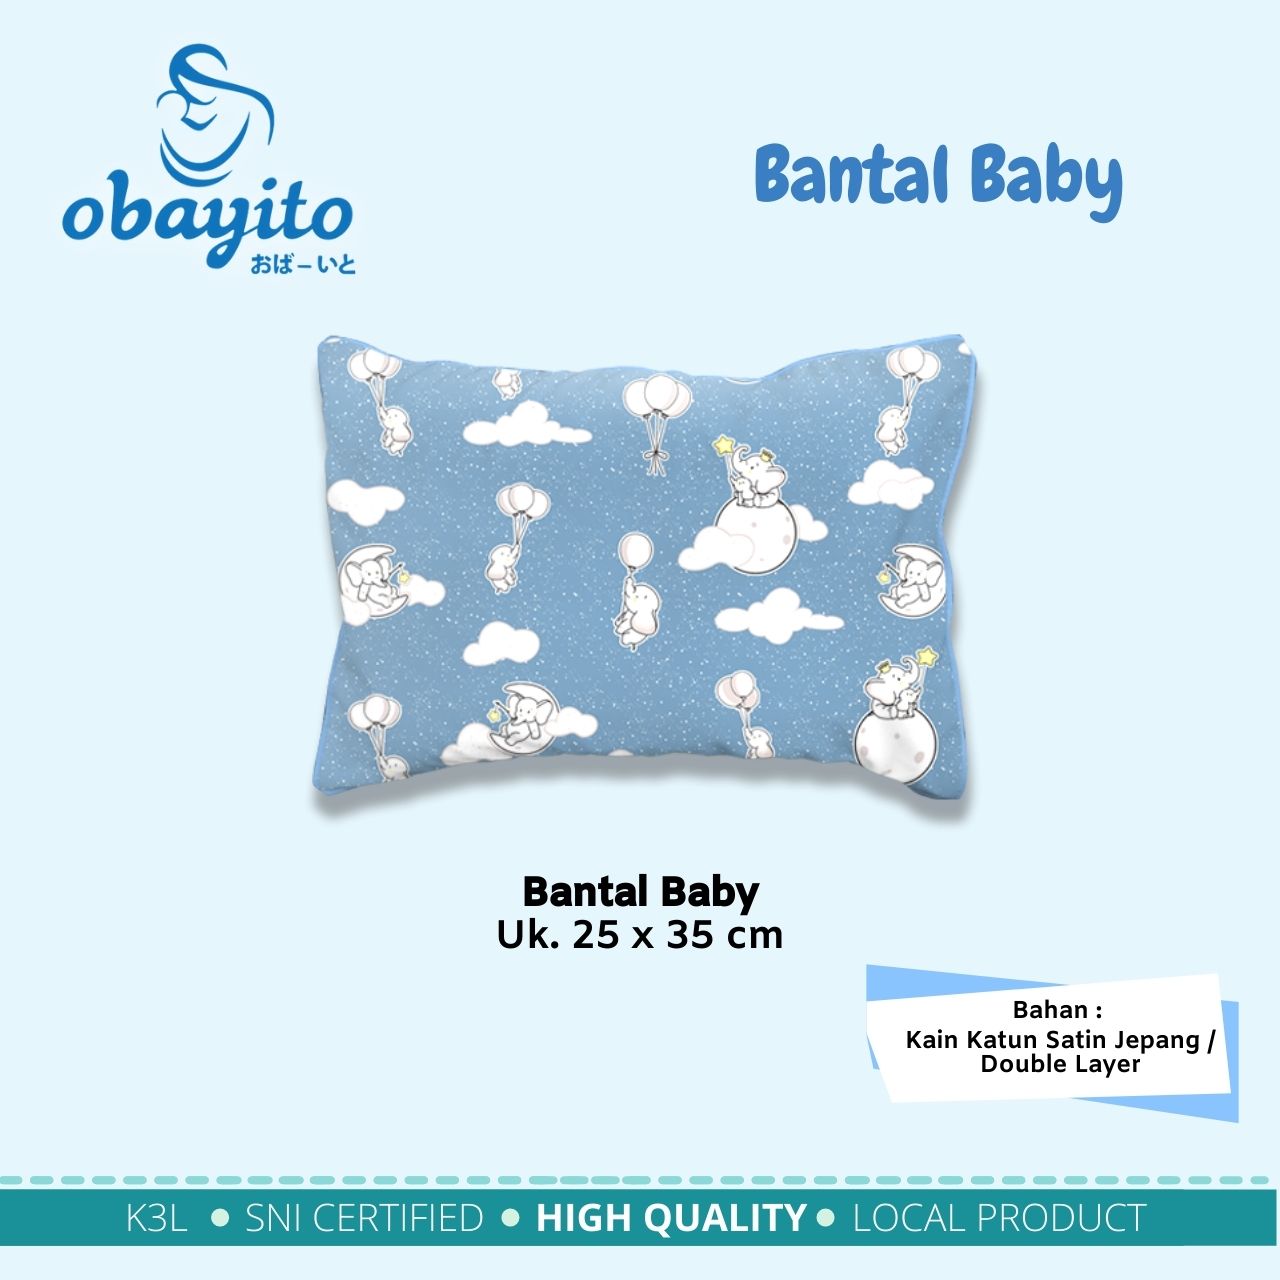 Bantal Baby Obayitoi